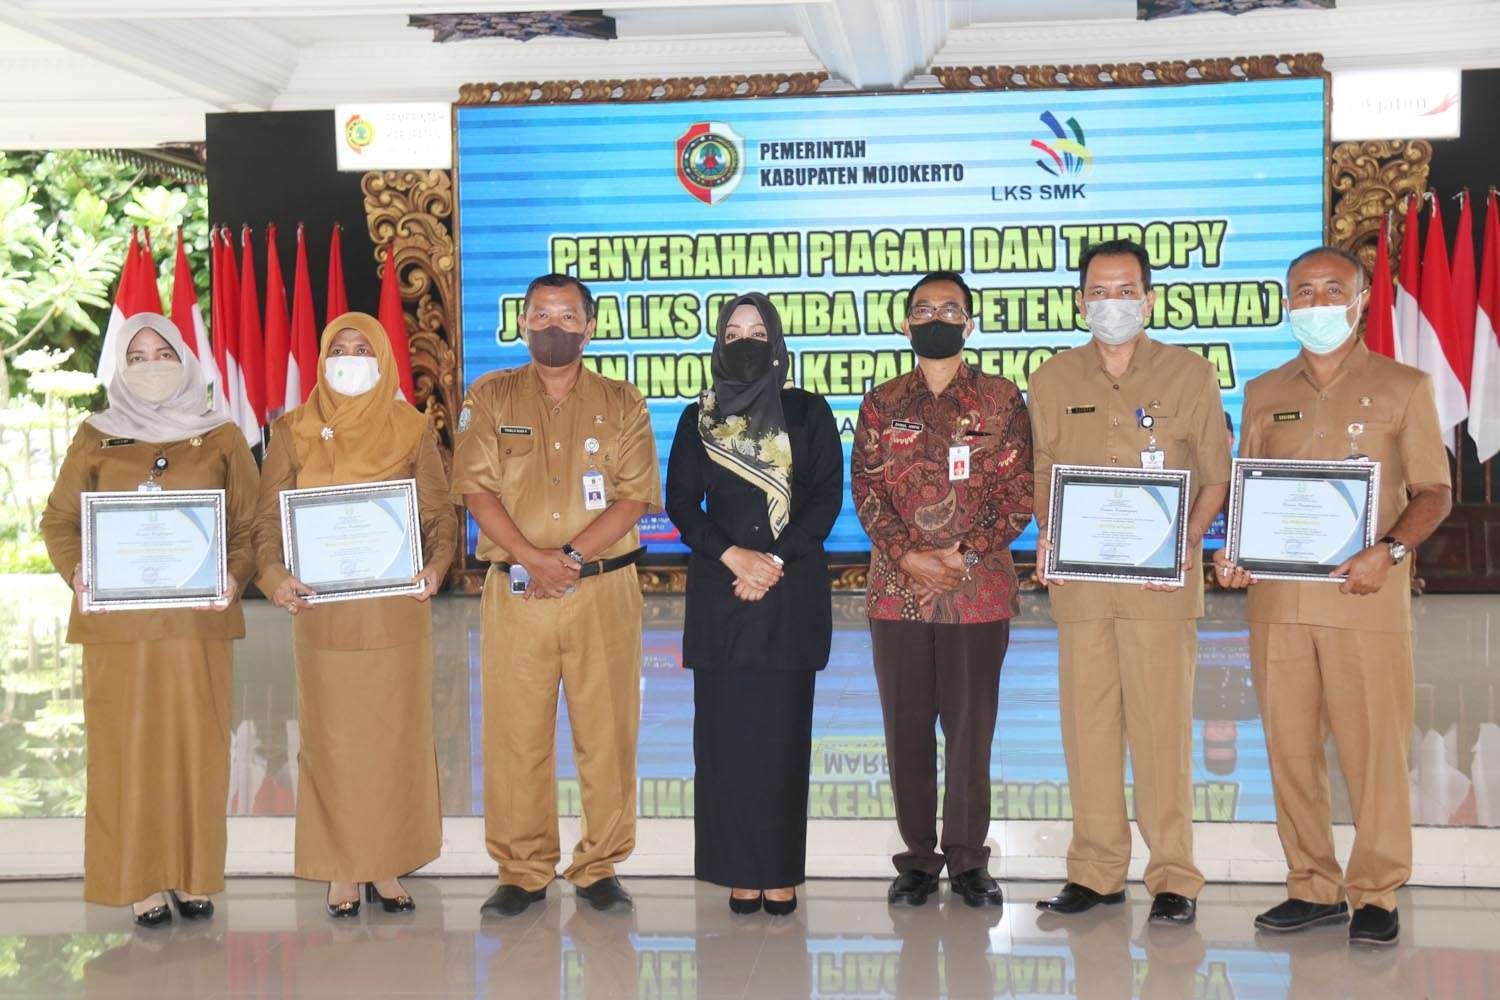 Bupati Mojokerto Ikfina Fahmawati bersama empat kepala SMA sebagai penerima penghargaan Inovasi Kepala SMA di Kabupaten Mojokerto. (Foto: Istimewa)